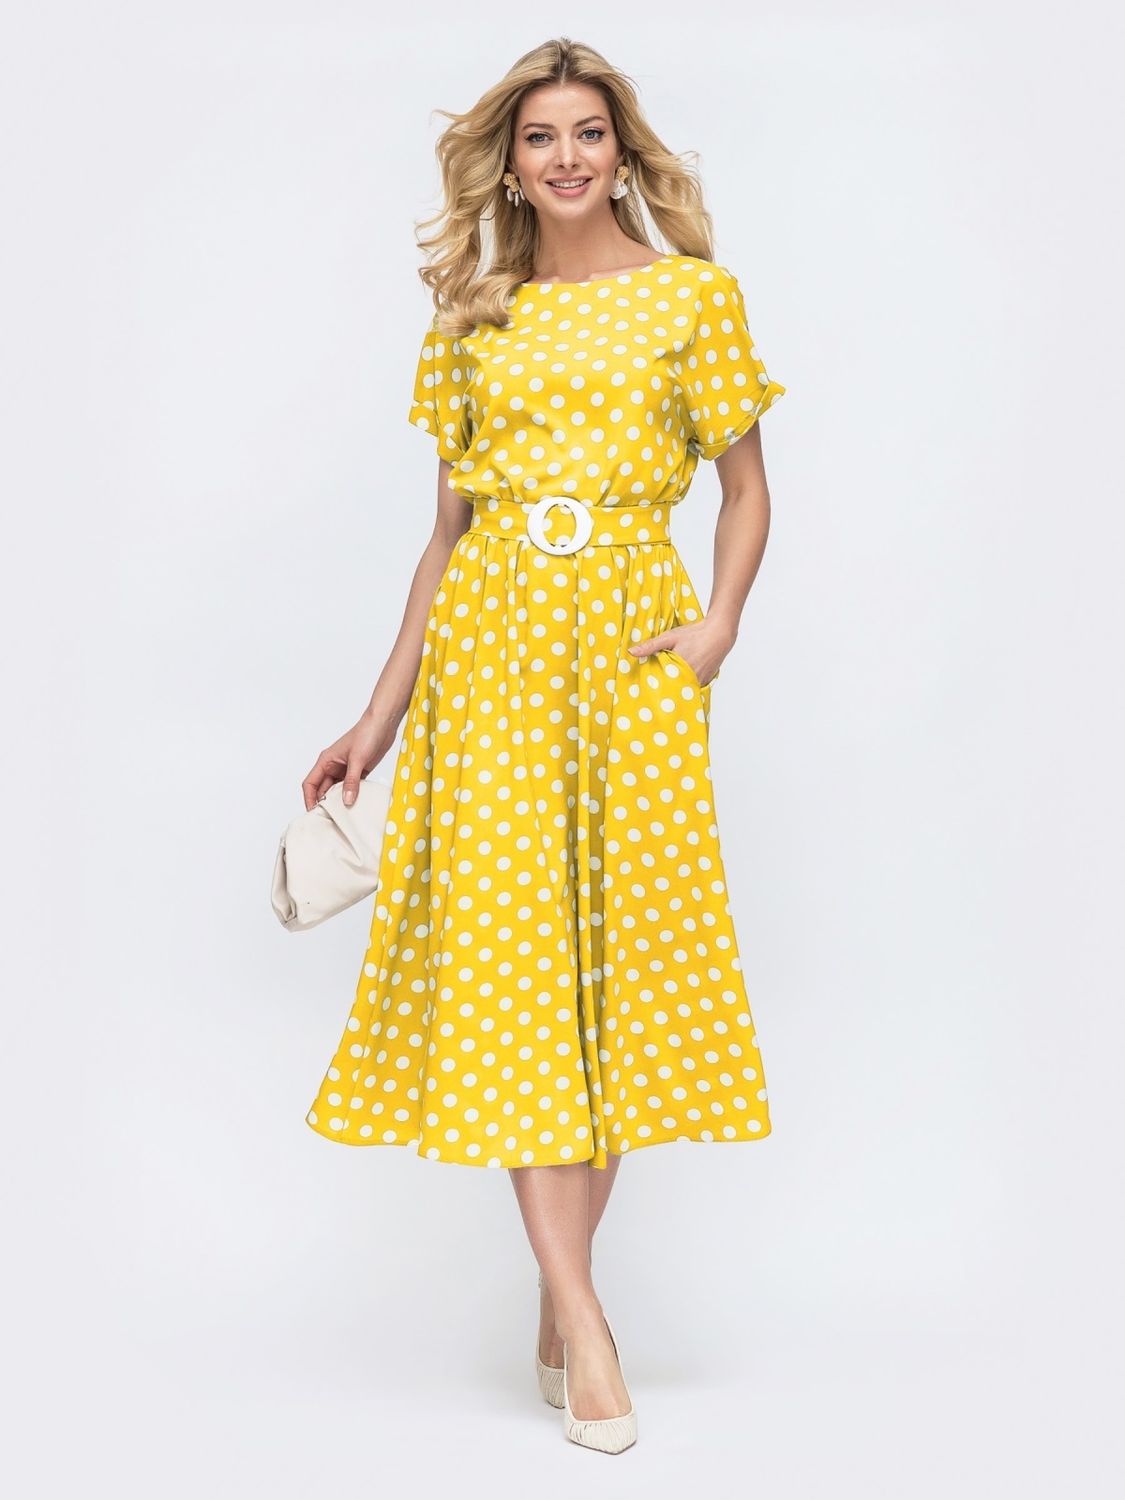 Літнє плаття в горошок зі спідницею-сонце жовте - фото